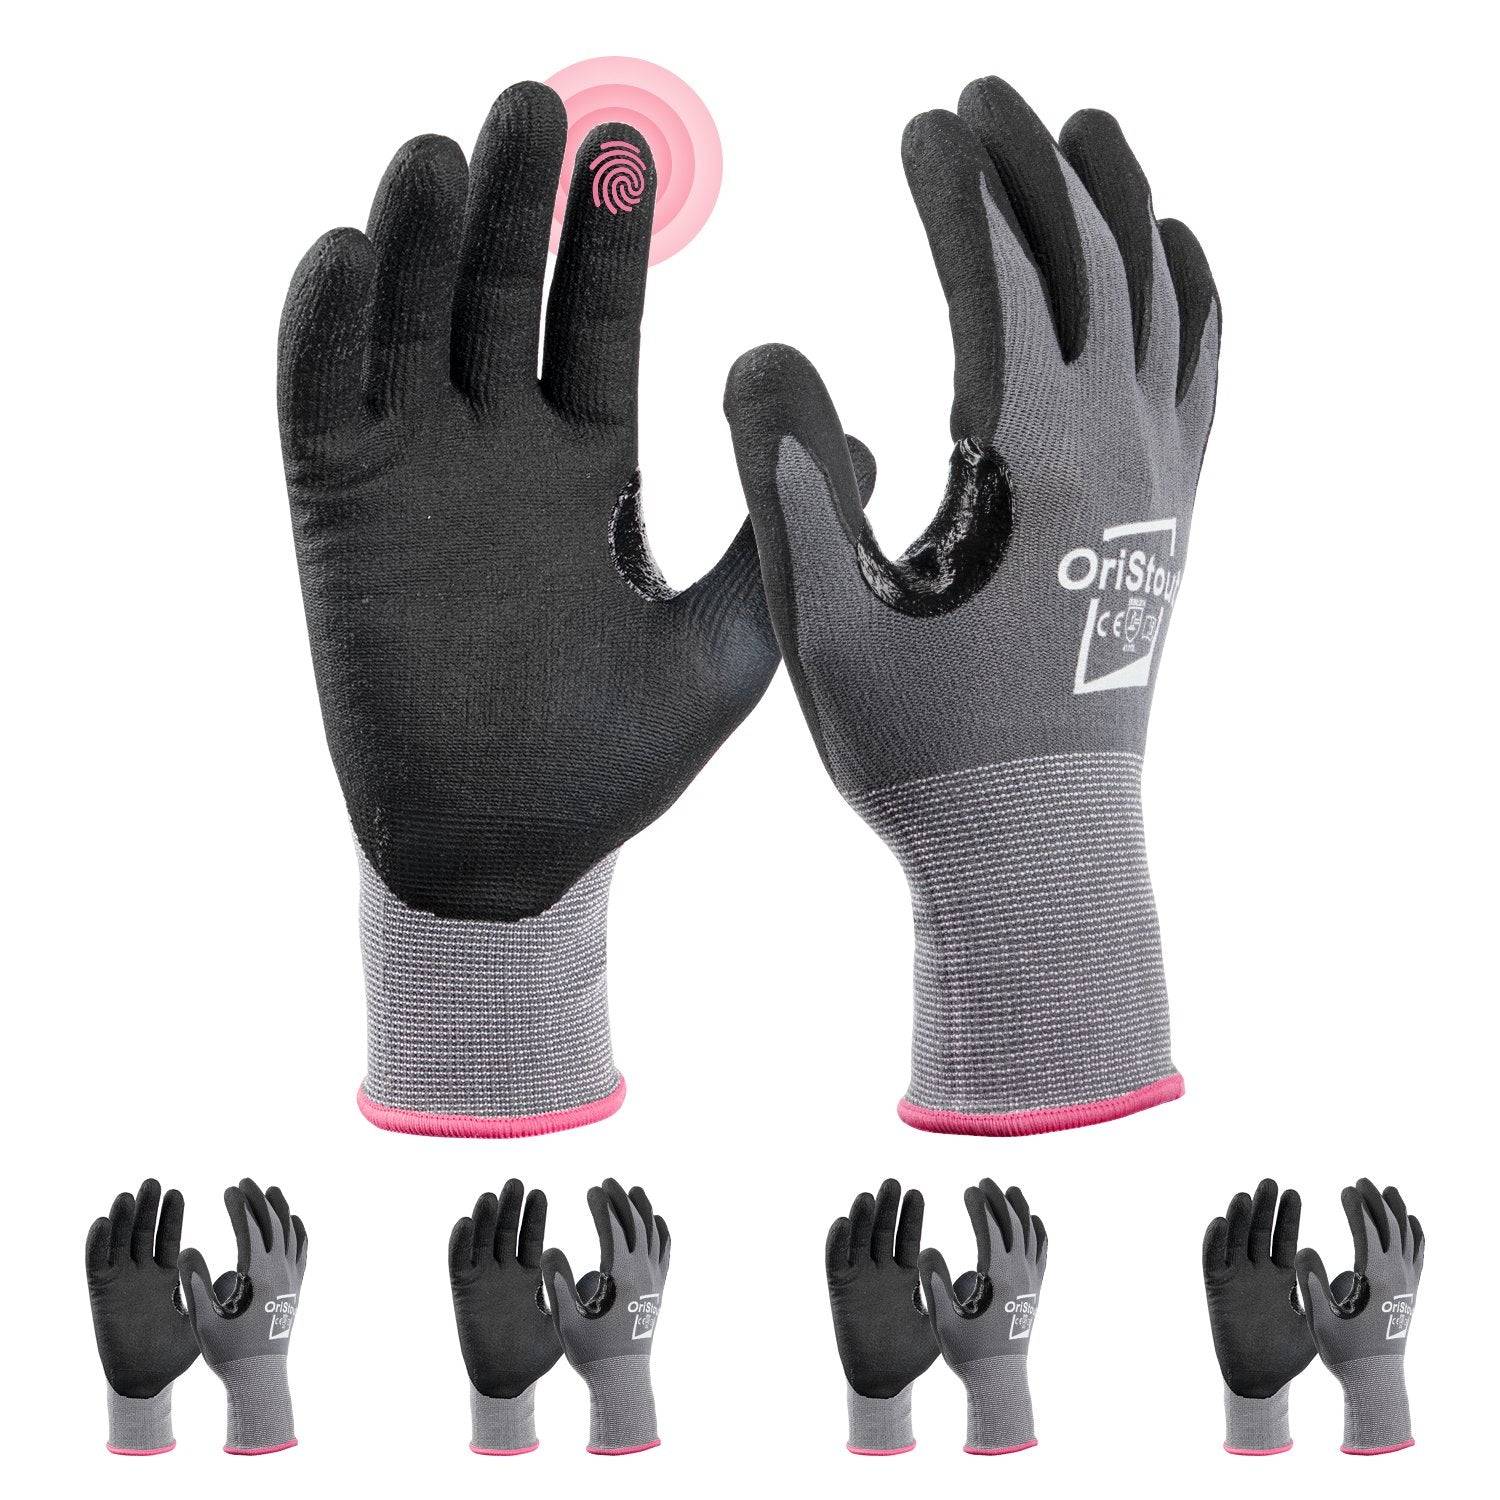 Sharp Object Handling Gloves [4]